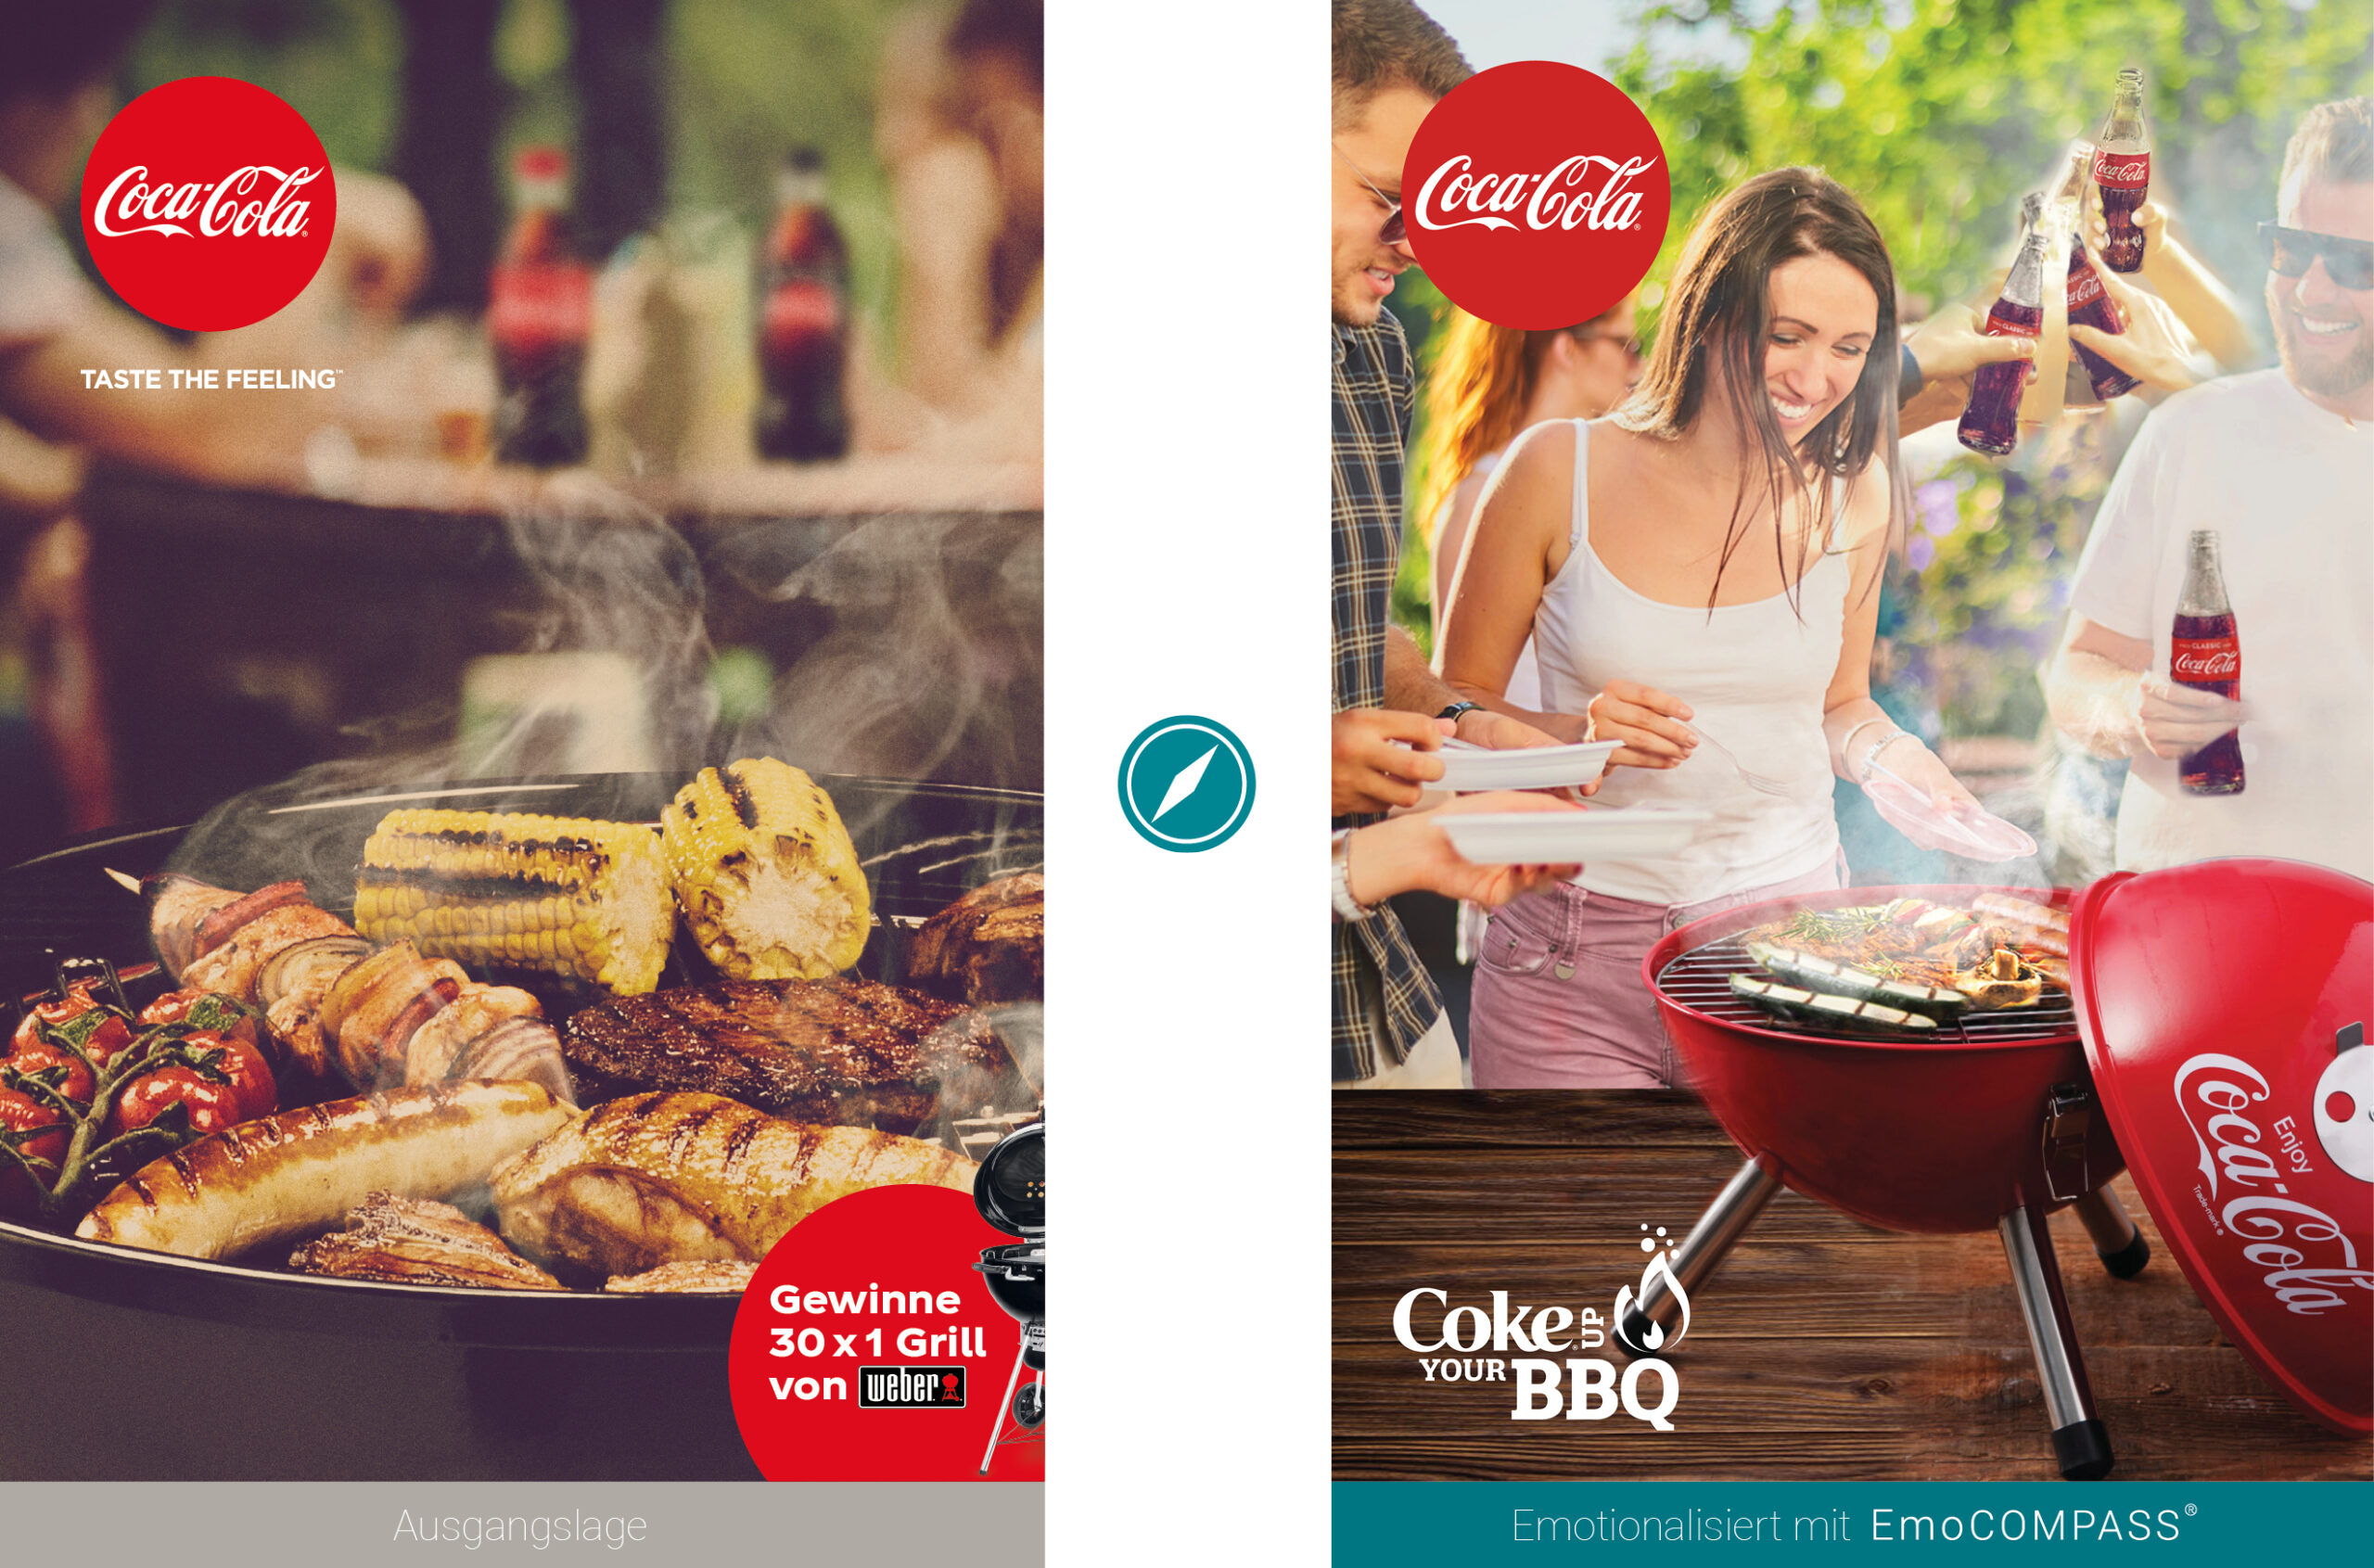 Vorher-/Nachher-Vergleich Promo-Kampagne Coke up your BBQ